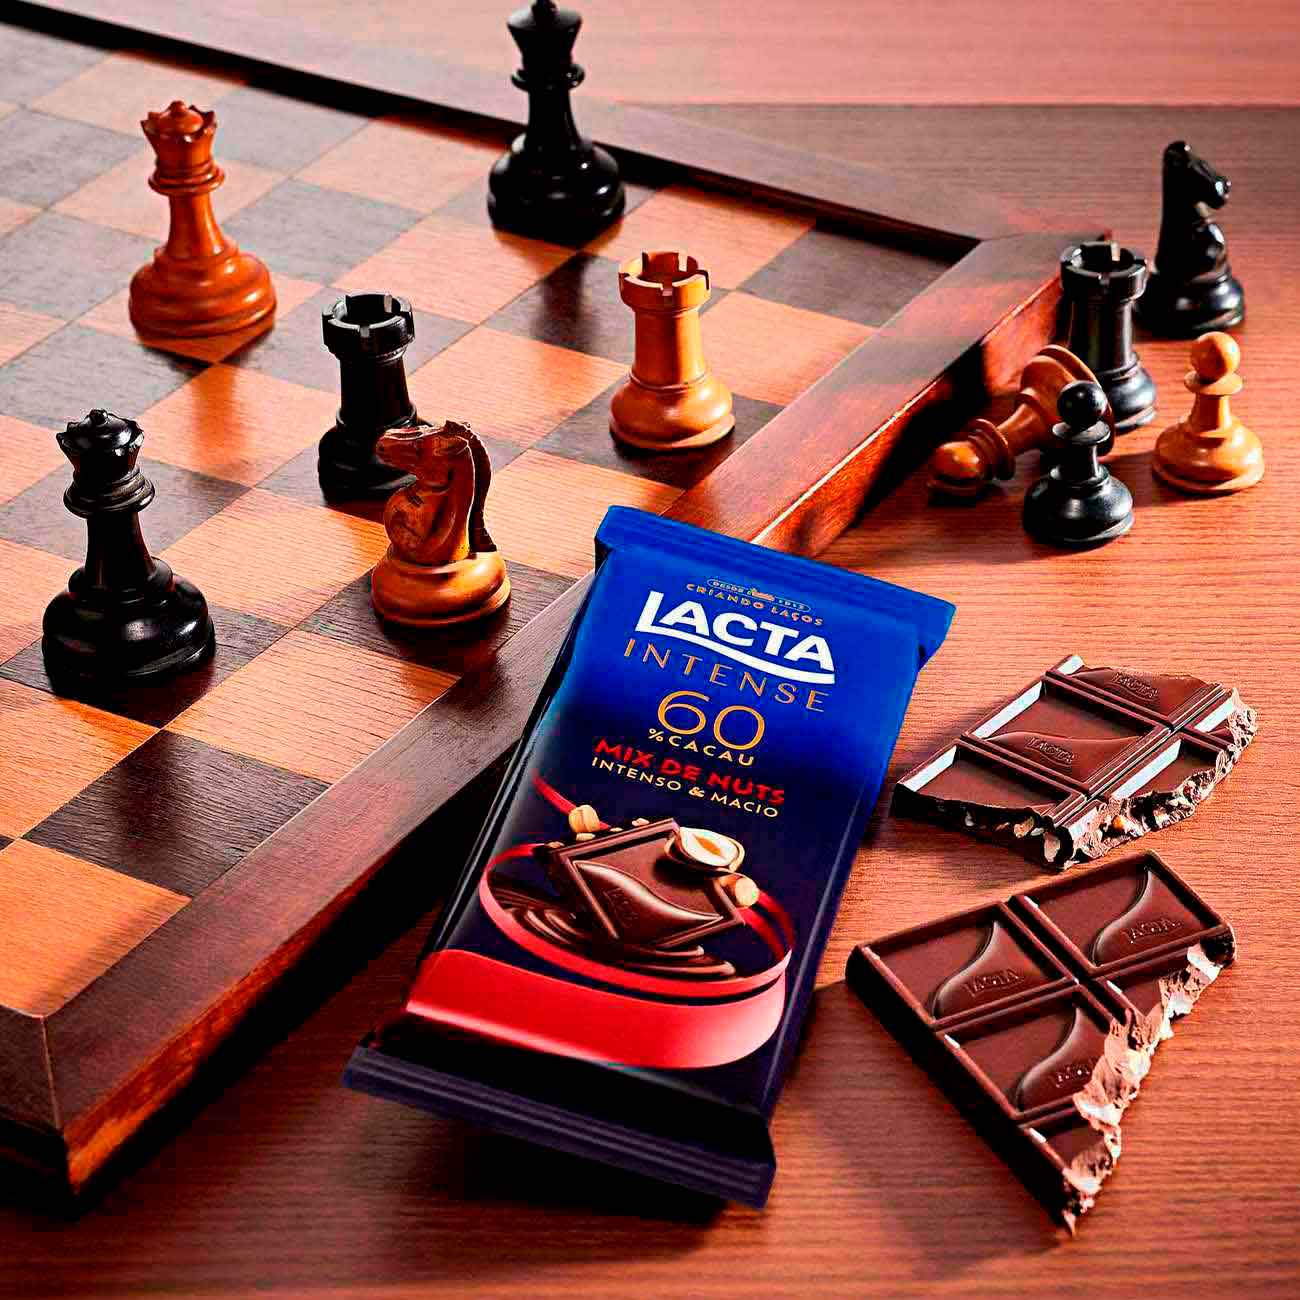 Barra de Chocolate Lacta Intense 60% Cacau Mix de Nuts 85g | Display X 17 unidades